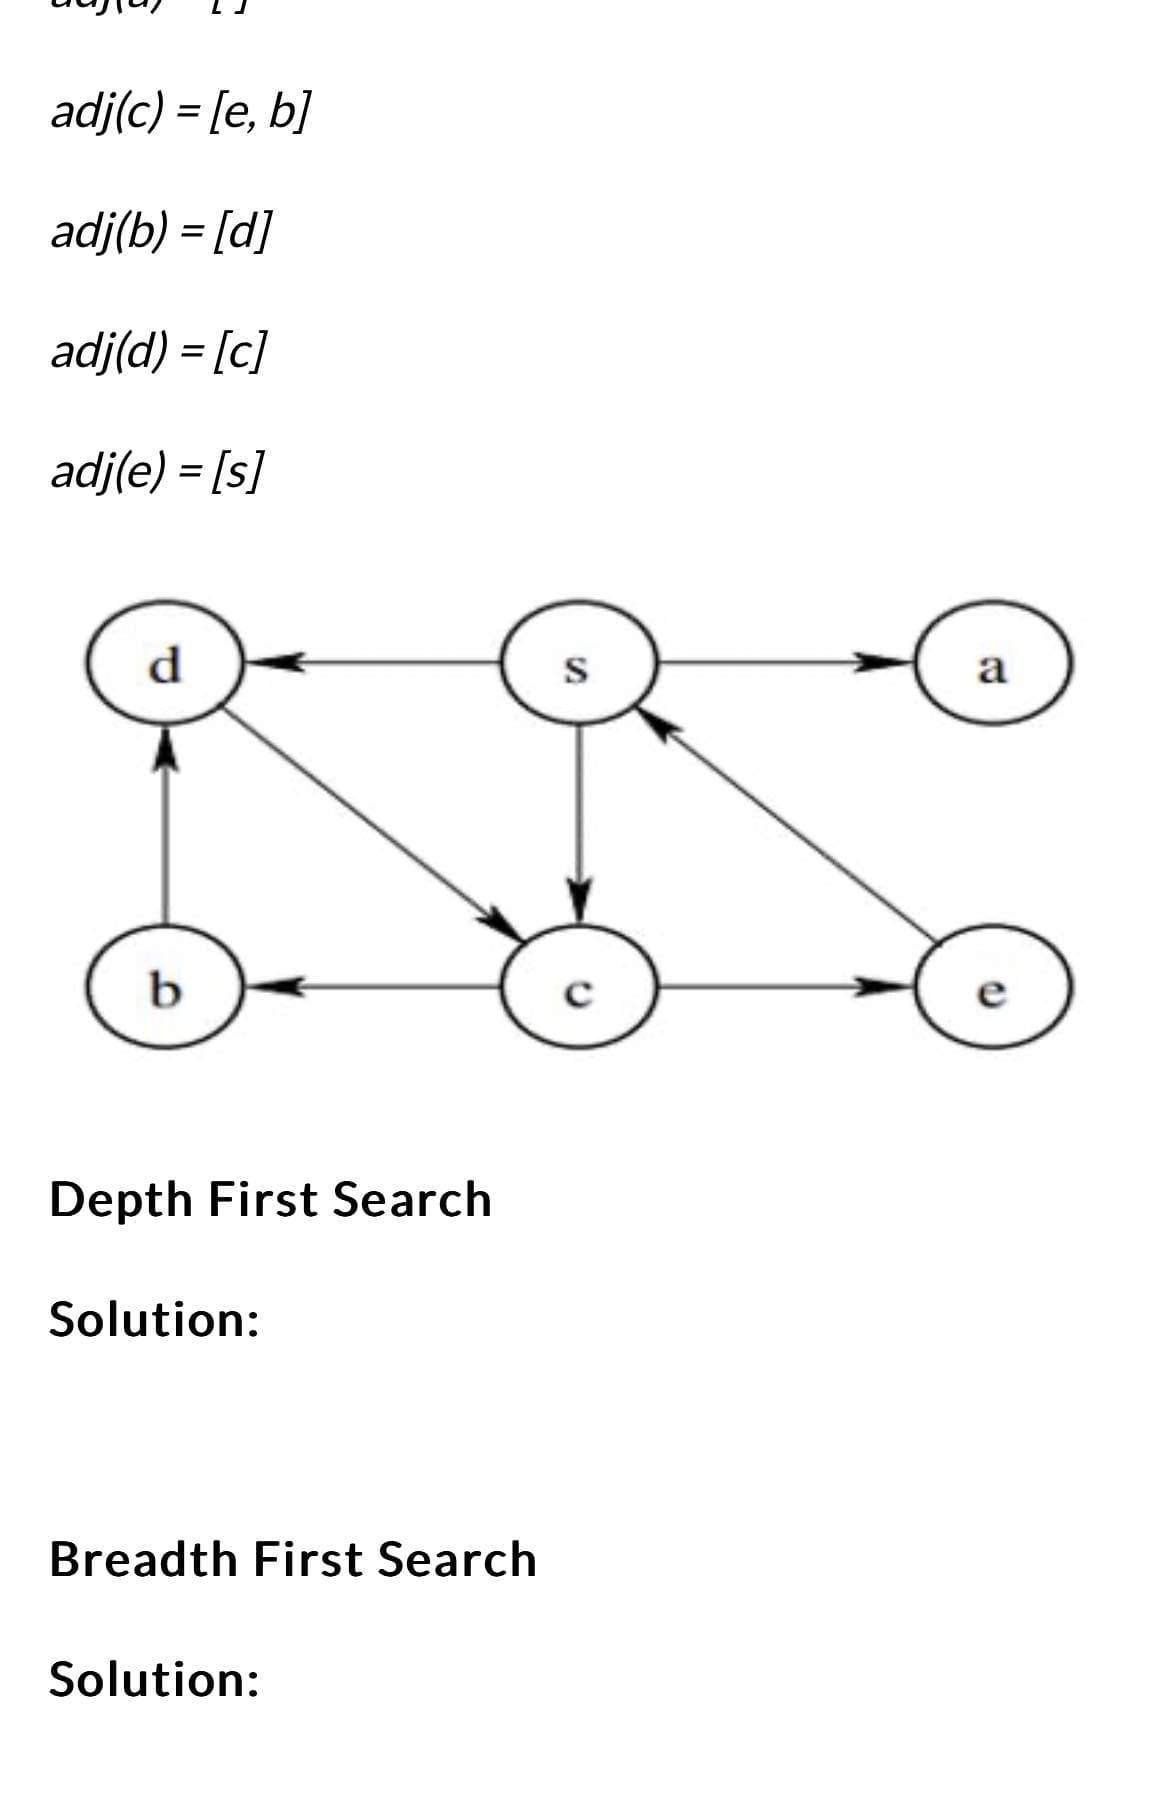 adj(c) = [e, b]
adj(b) = [d]
adj(d) = [c]
adj(e) = [s]
d
b
Depth First Search
Solution:
Breadth First Search
Solution:
S
с
a
e